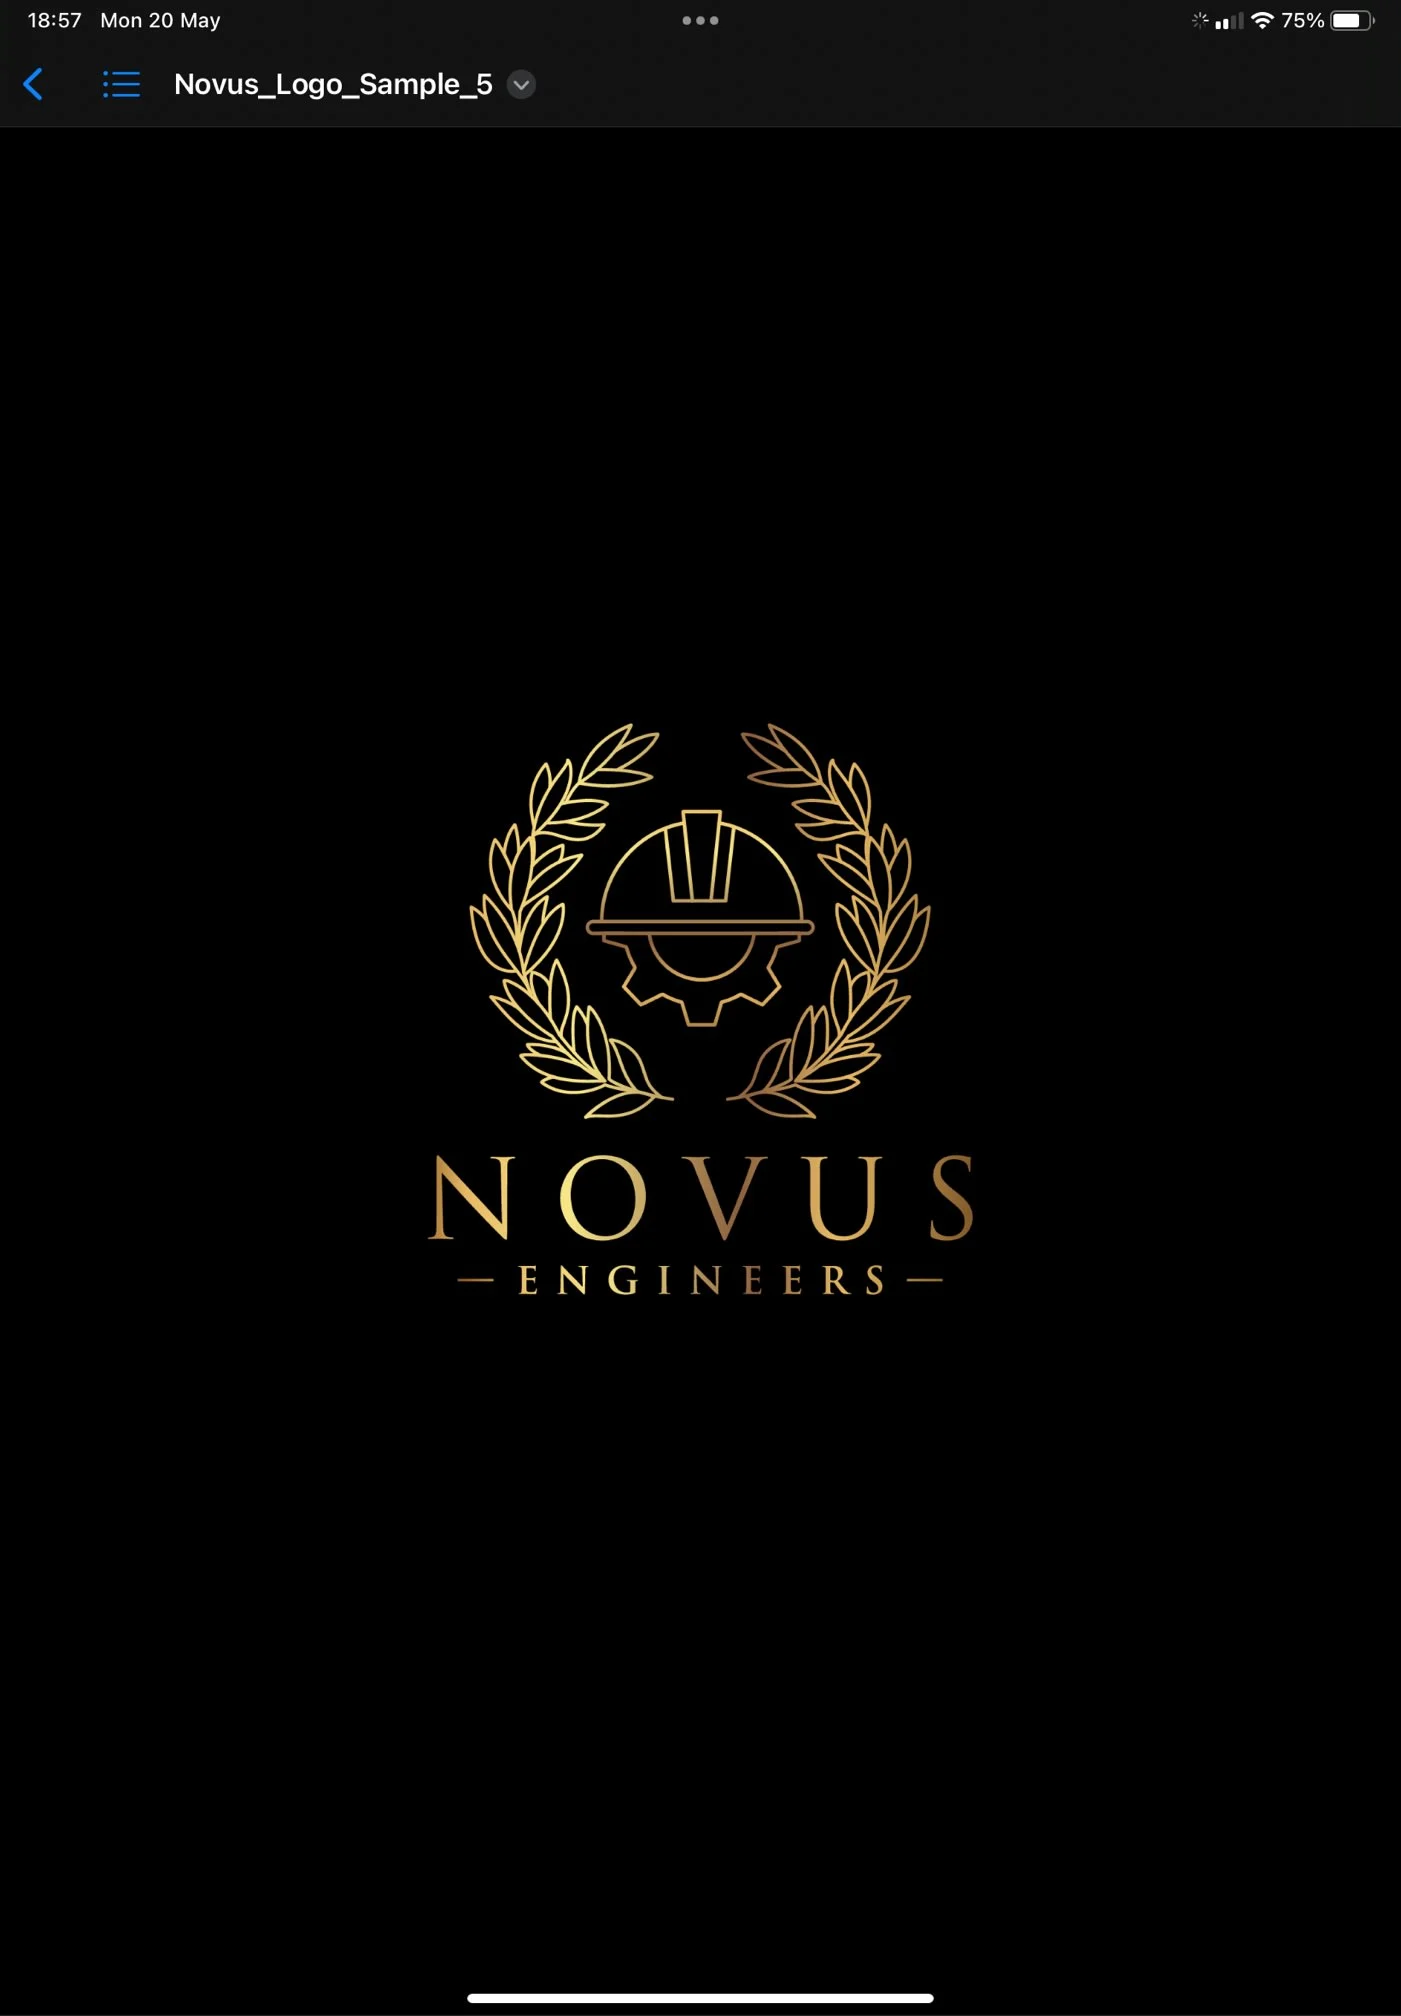 Novus Engineers Ware 07301 296008